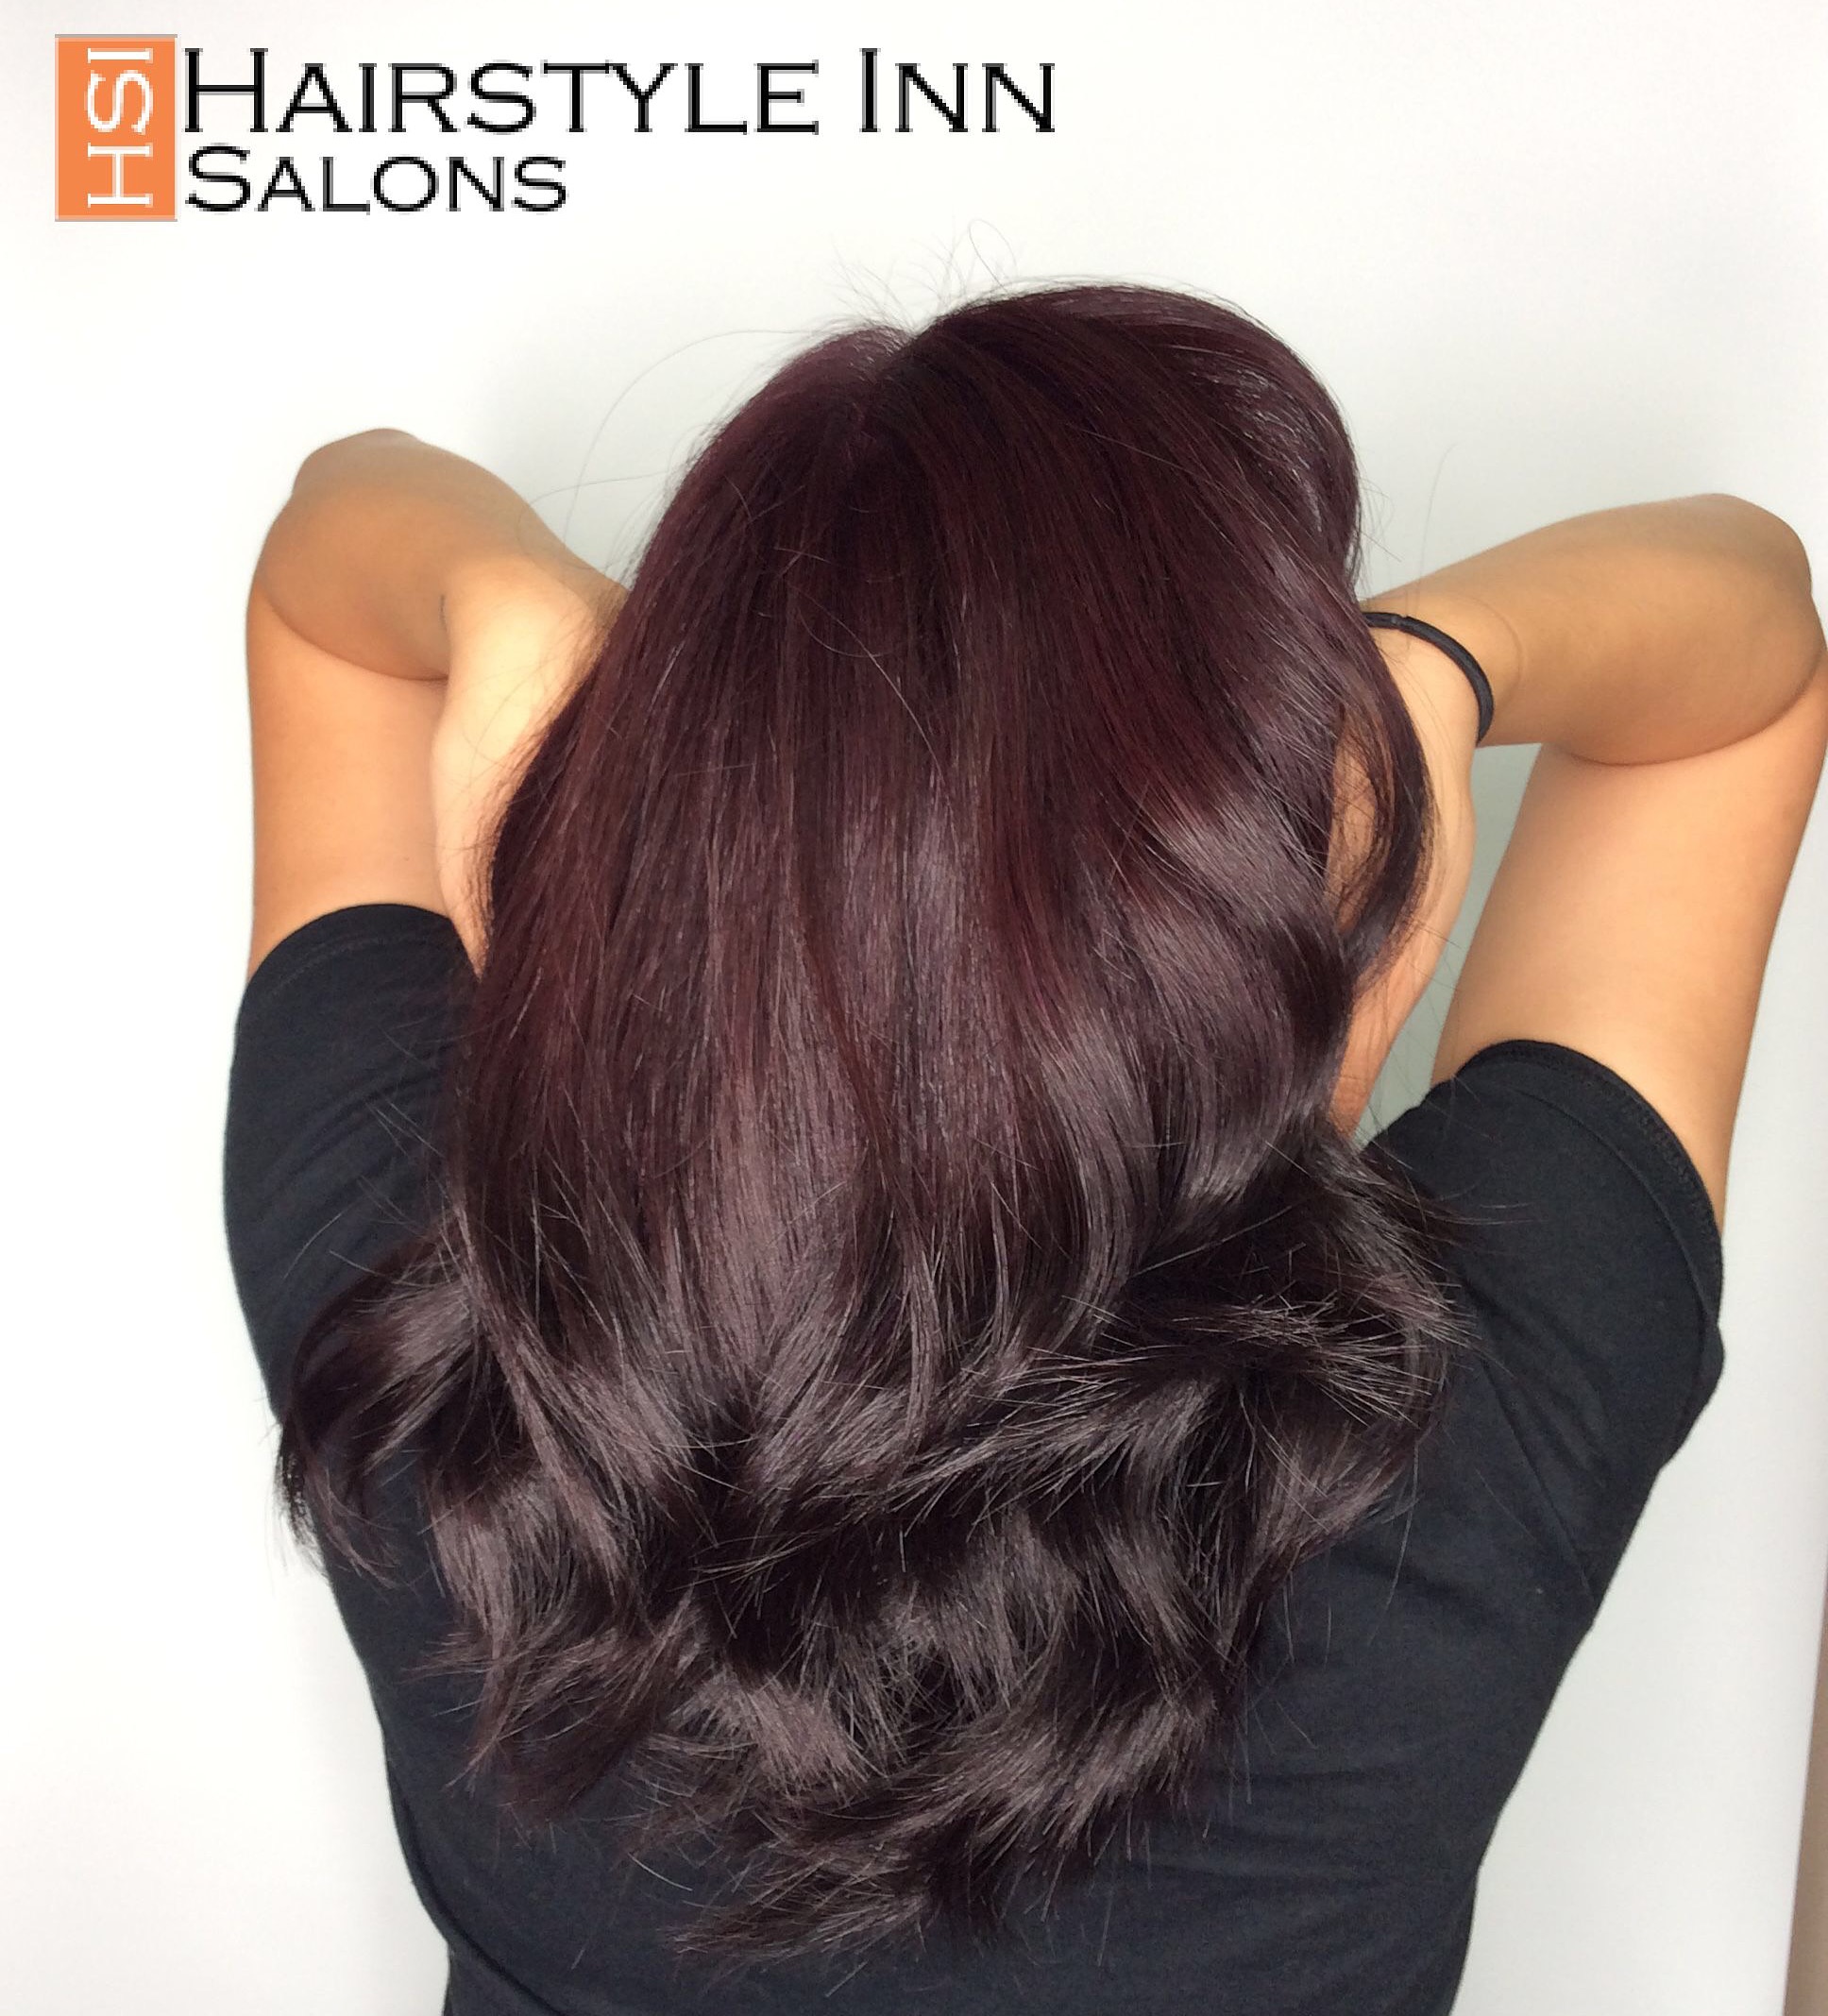 Hairstyle Inn for hair colour